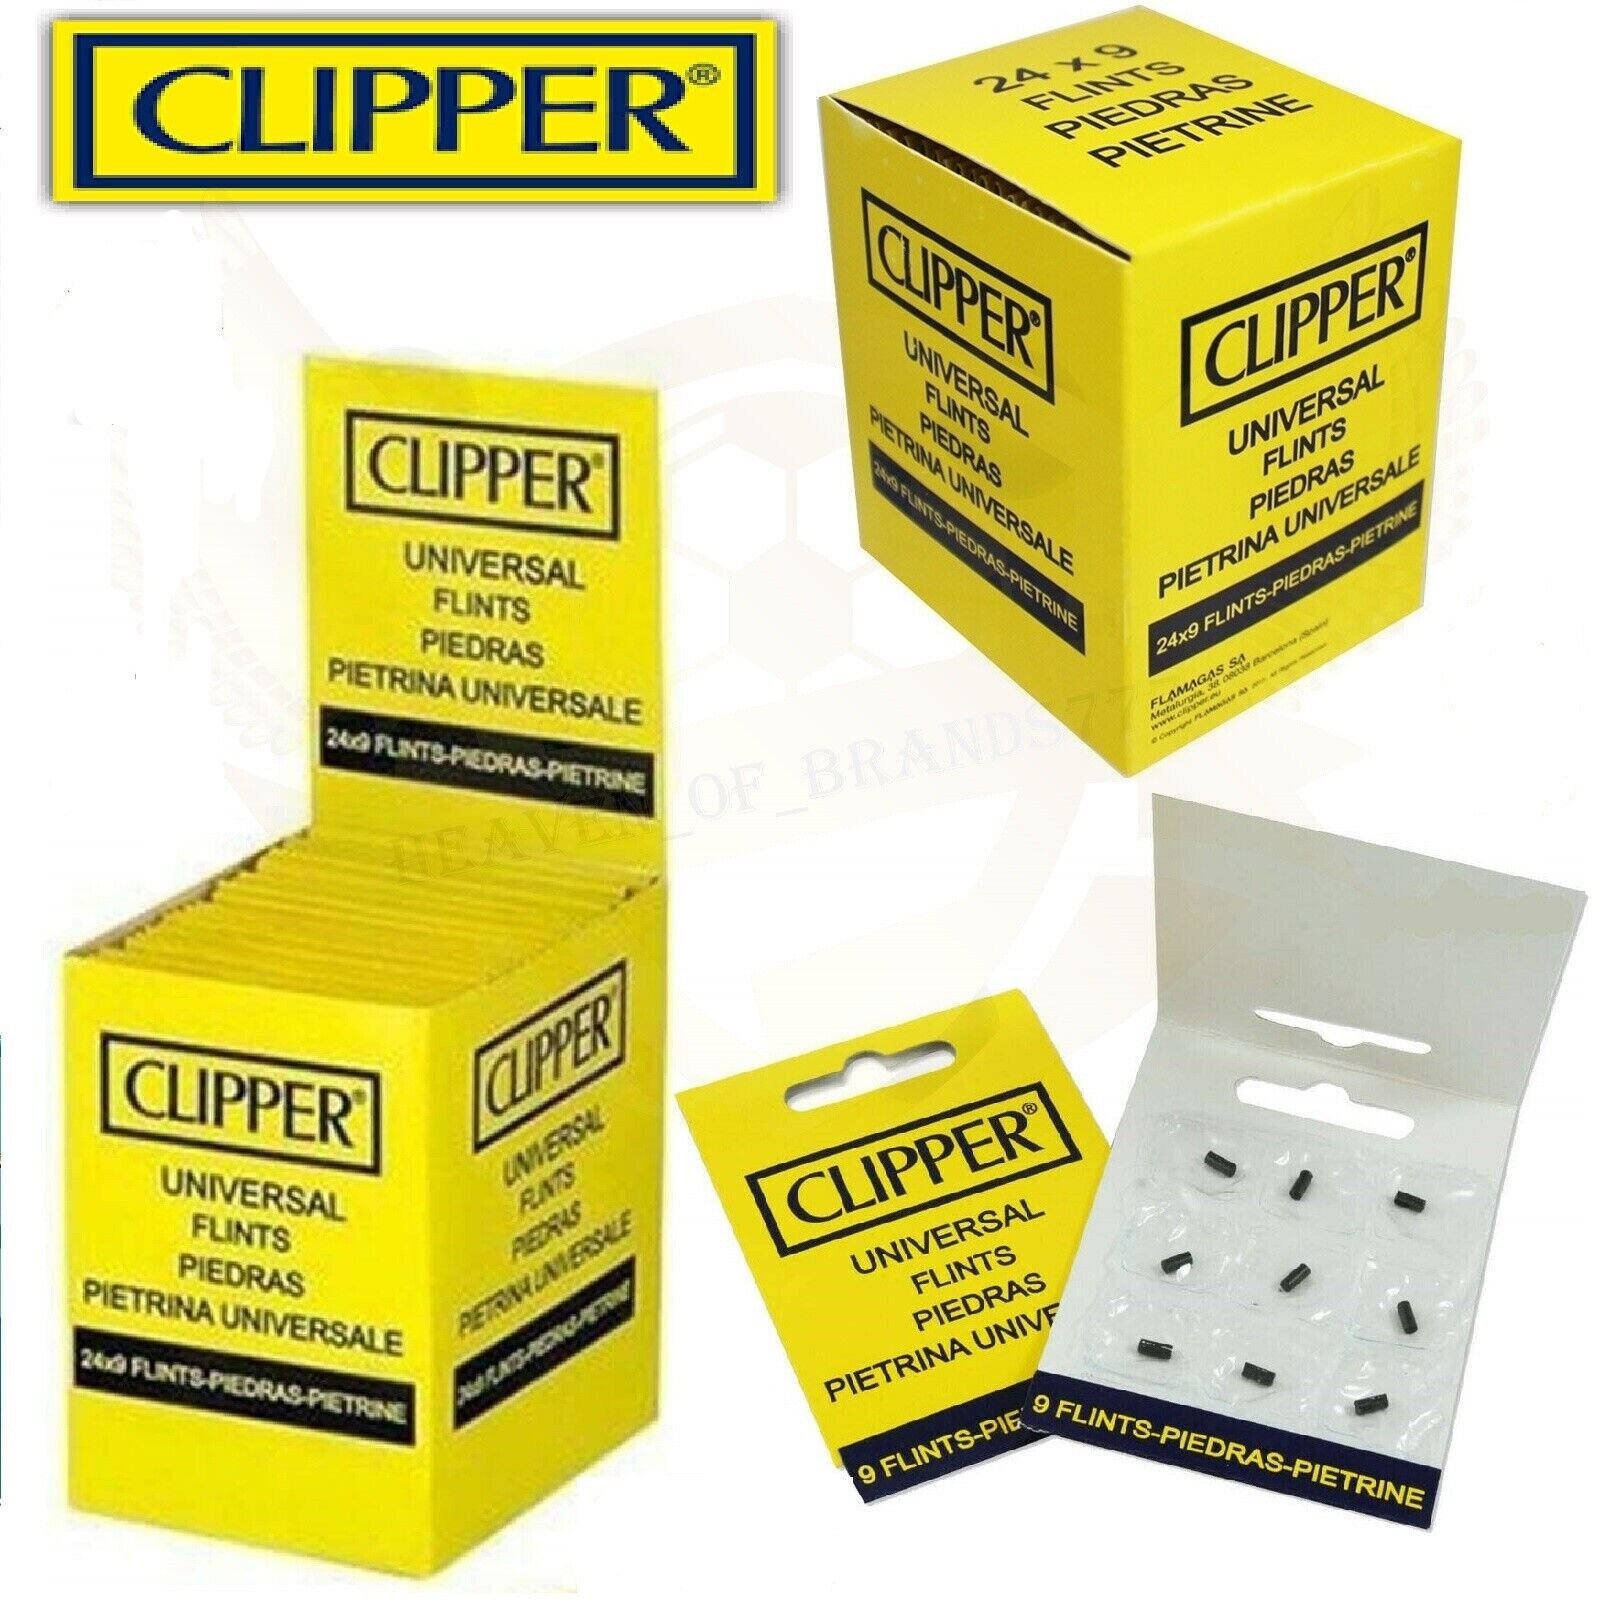 CLIPPER Replacement Lighter Flint 24 Pack, 216 Universal Flints Piedras Pietrina